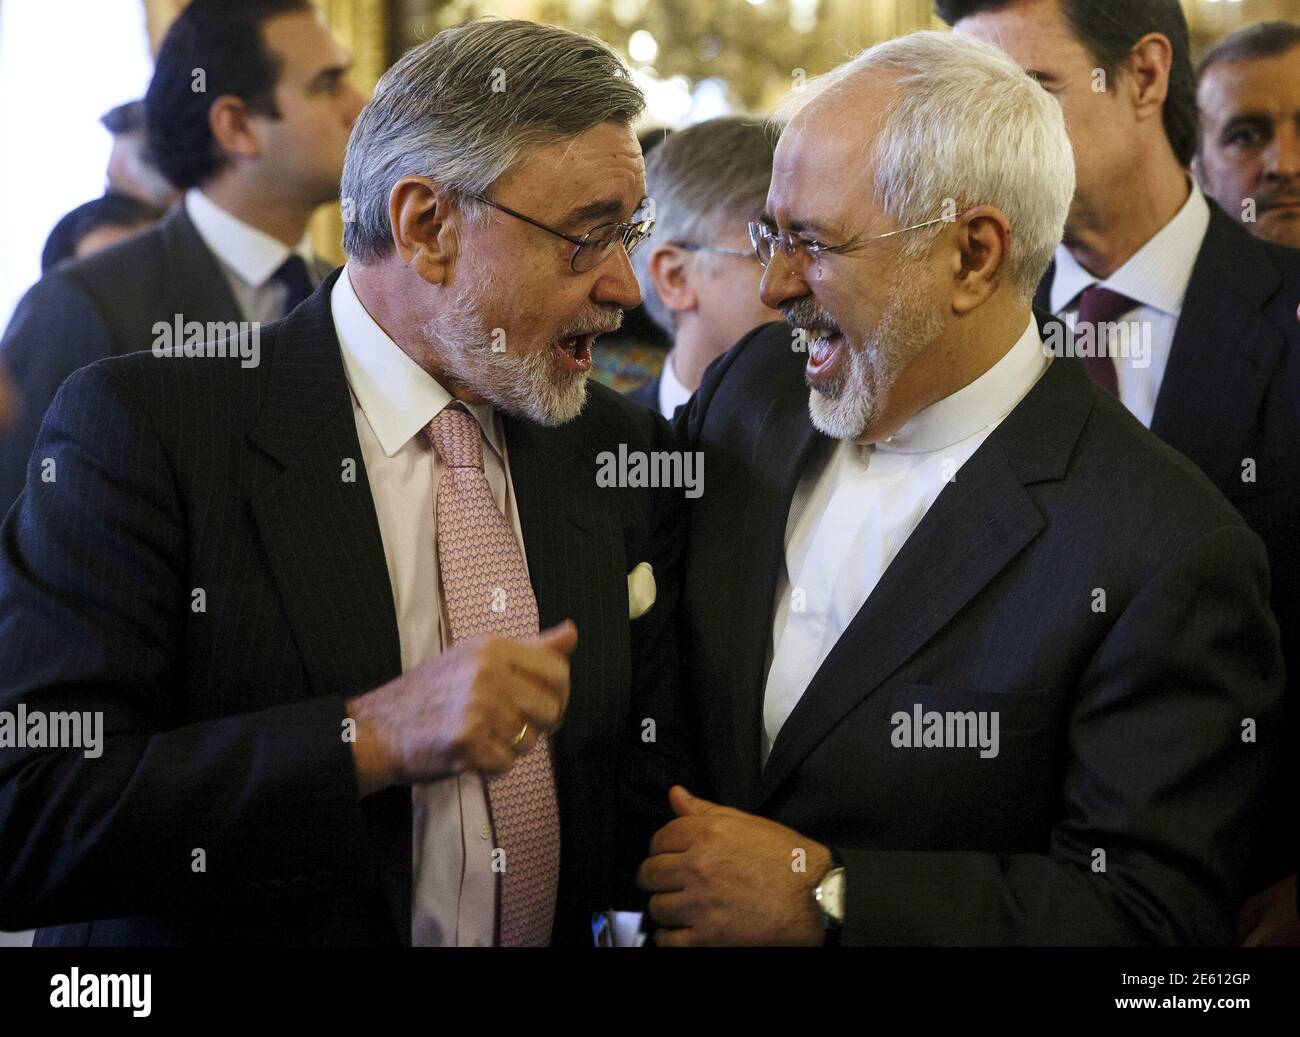 El ministro de Asuntos Exteriores de Irán, Mohammad Javad Zarif (R), se ríe  junto al ex embajador español en Irán, Leopoldo Stampa, después de un desayuno  informal en Madrid, el 14 de